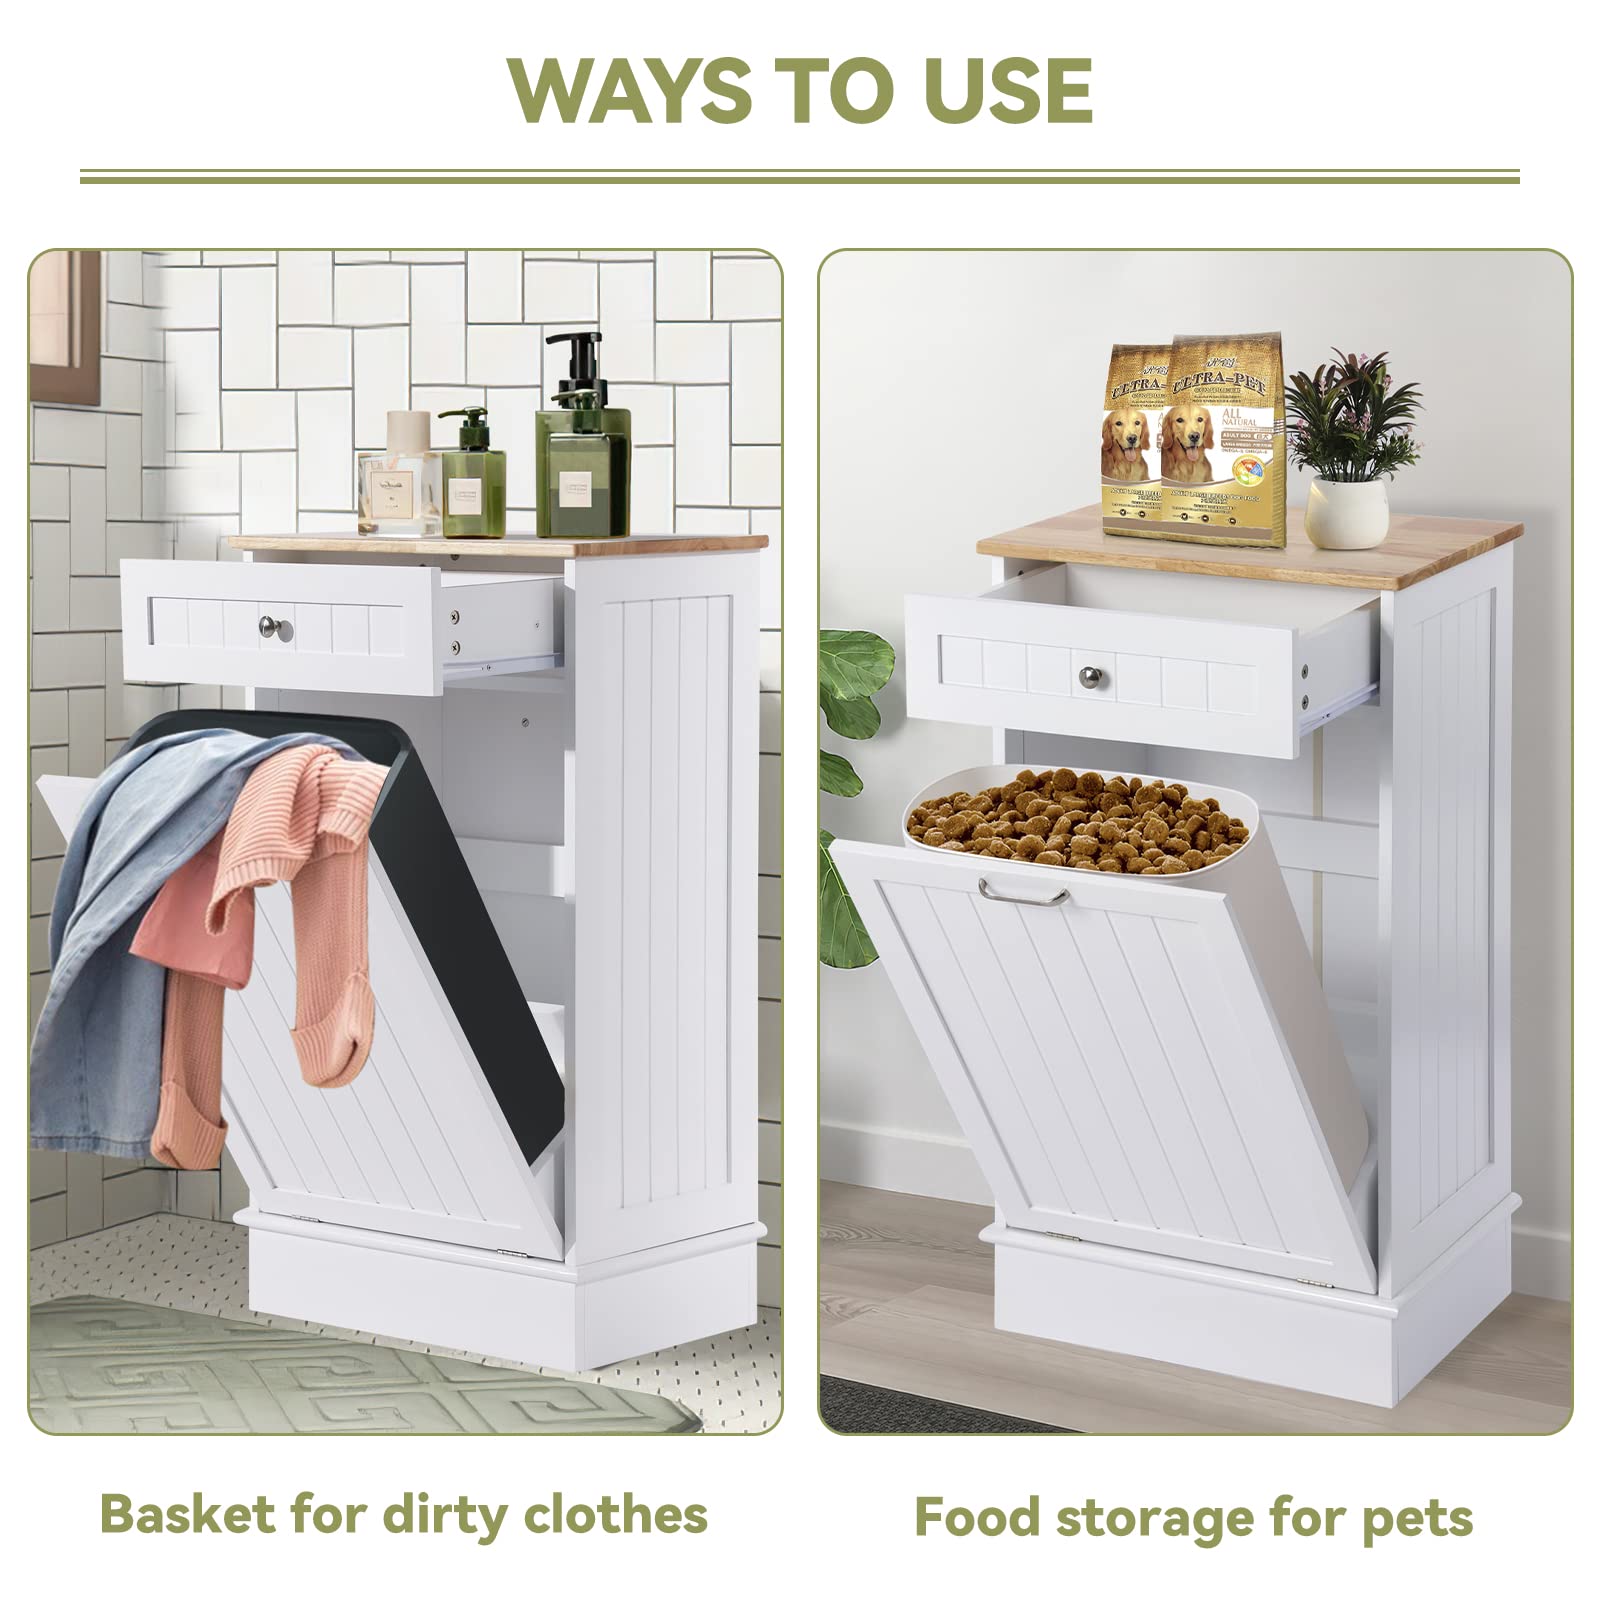 LOUVIXA Tilt Out Trash Bin Cabinet Dog Proof Trash Can Holder Kitchen Island with Garbage Bin or Tilt Out Laundry Hamper (White)